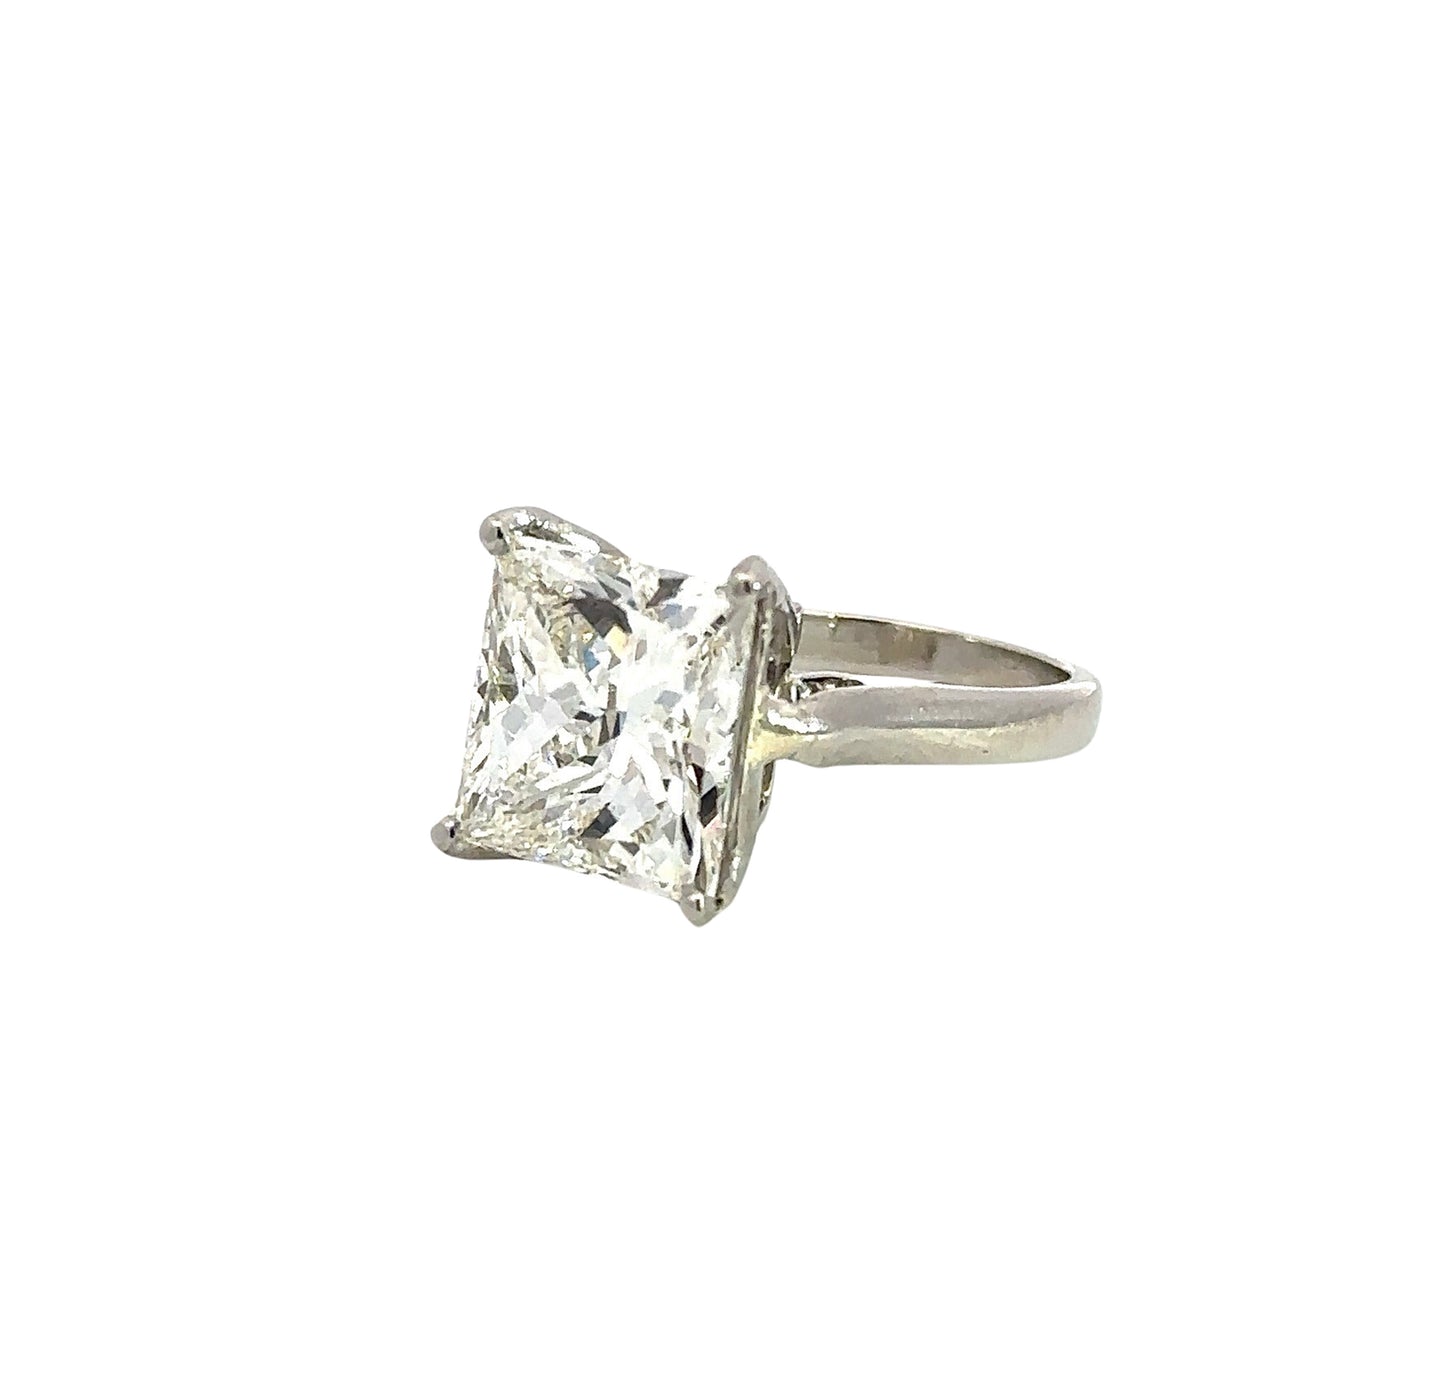 Diagonal view of 5.04 carat princess-cut diamond ring in platinum